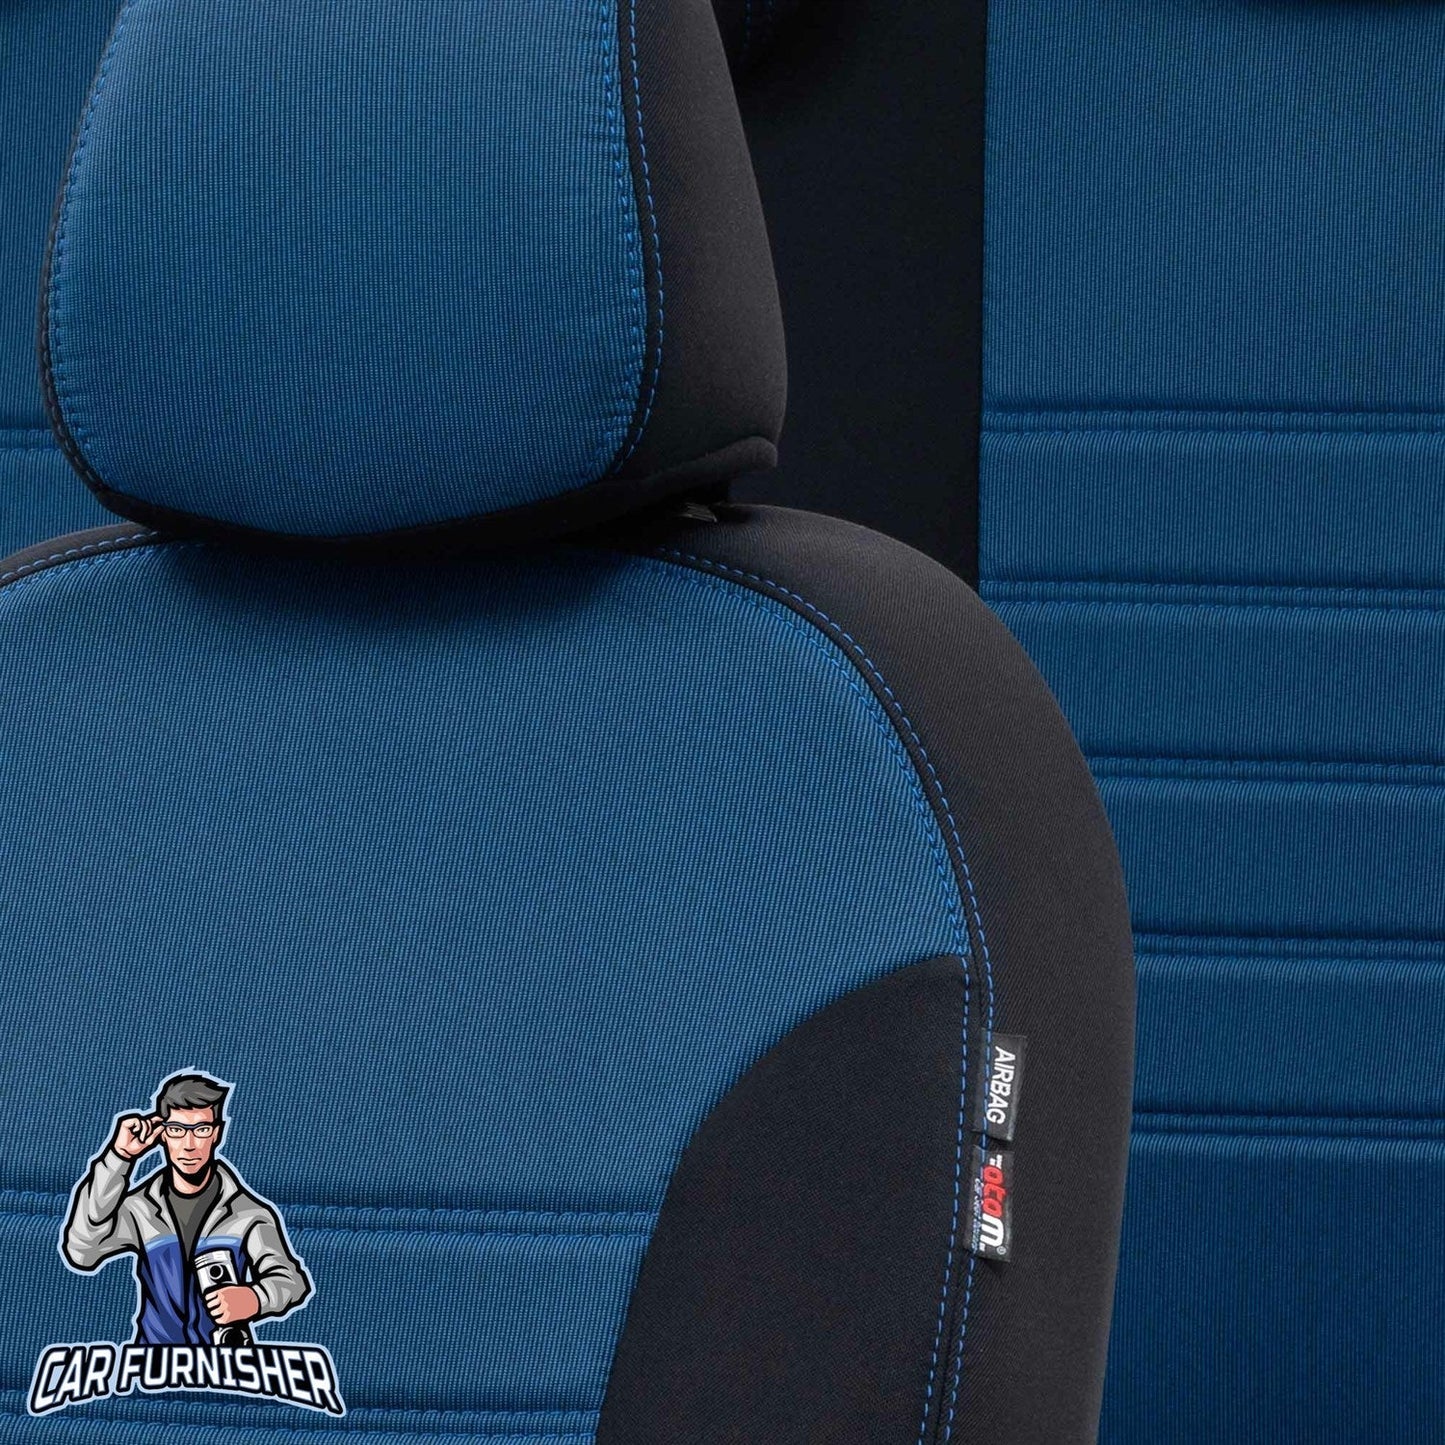 Isuzu N-Wide Seat Covers Original Jacquard Design Blue Jacquard Fabric